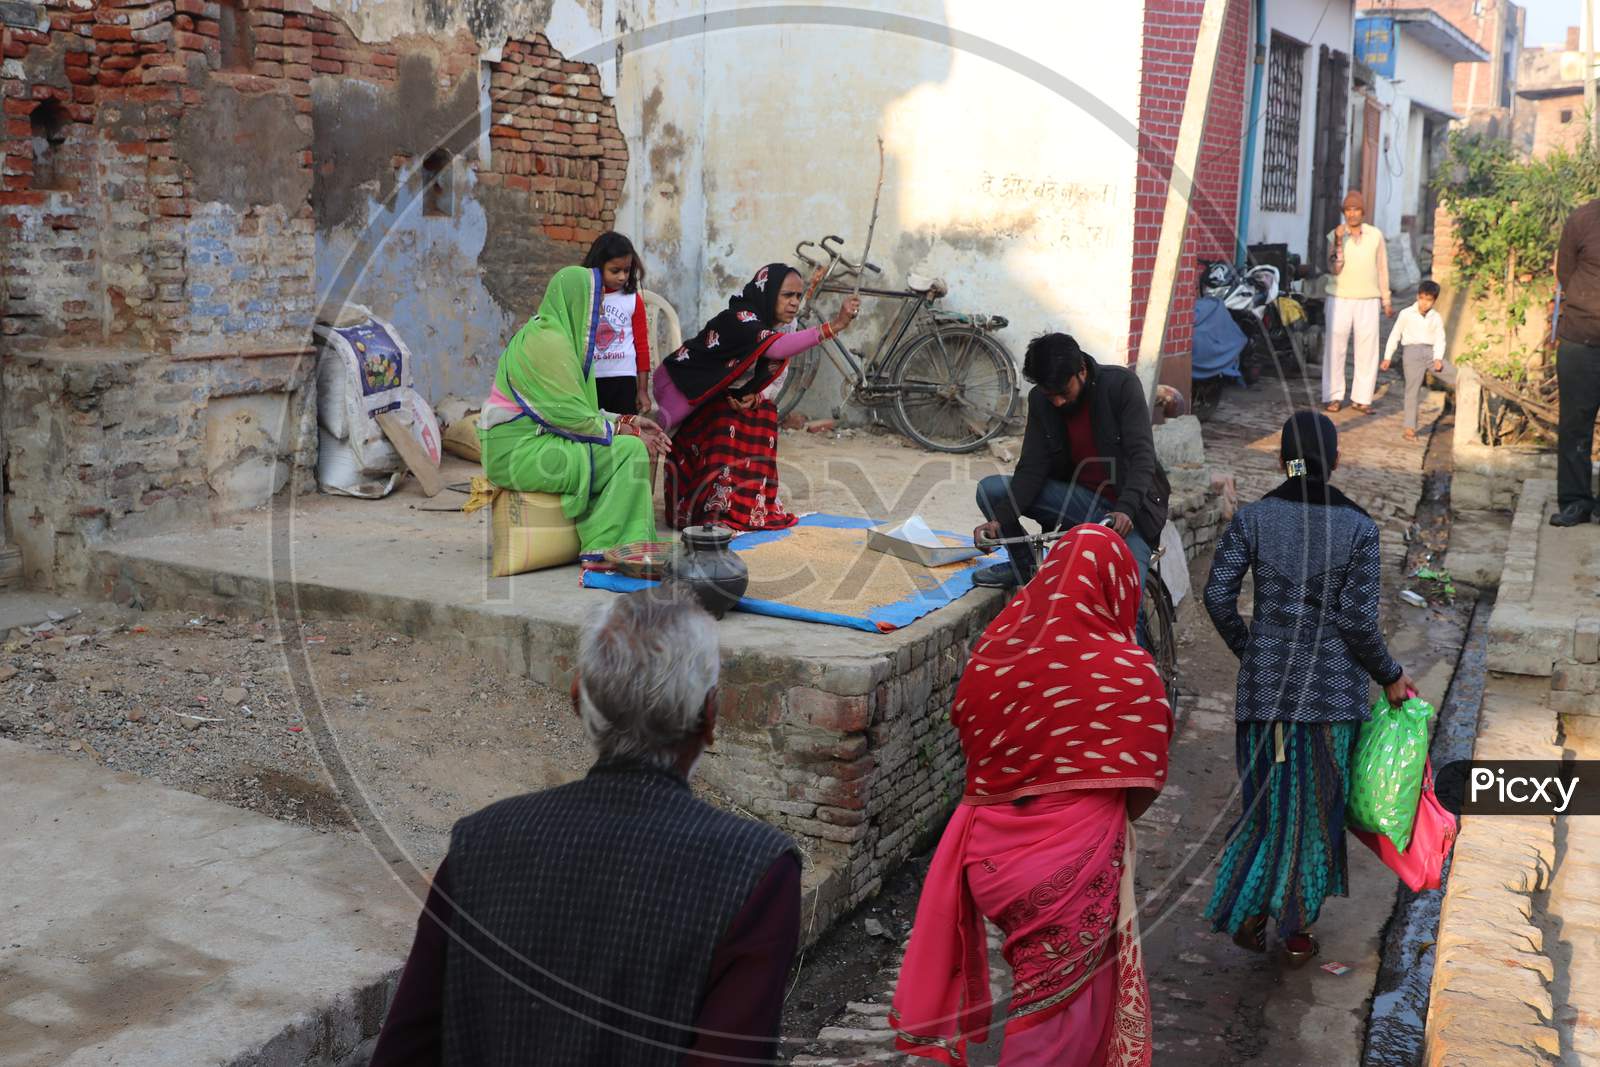 Livelihood Of People in Rural Villages